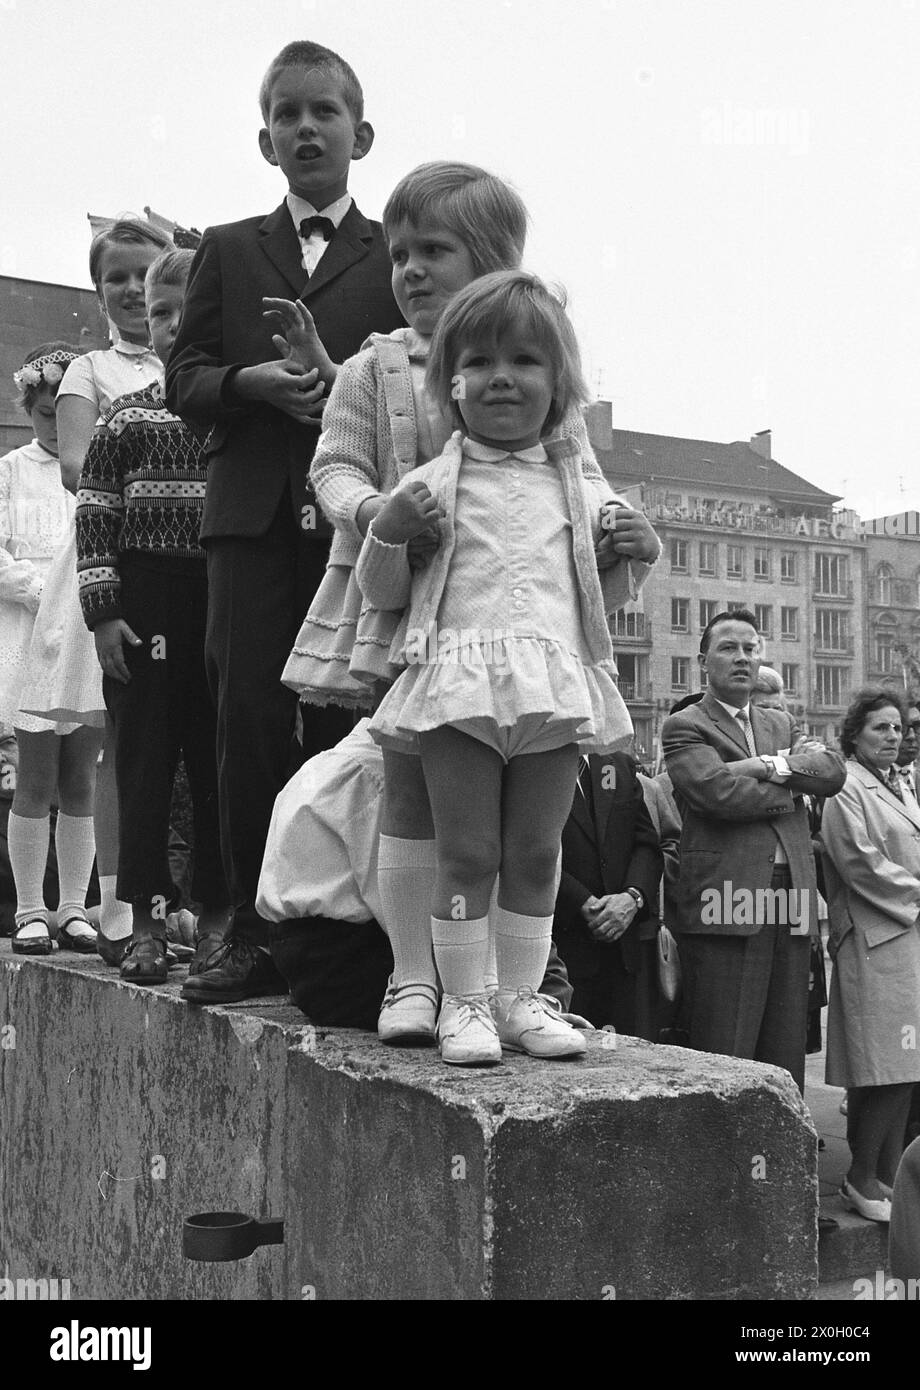 Kinder stehen auf einer Mauer, damit sie eine bessere Sicht auf das Geschehen haben. Im Hintergrund sind weitere Zuschauer zu sehen. (Aufnahmedatum: 01.01.1960-31.12.1969) Foto Stock